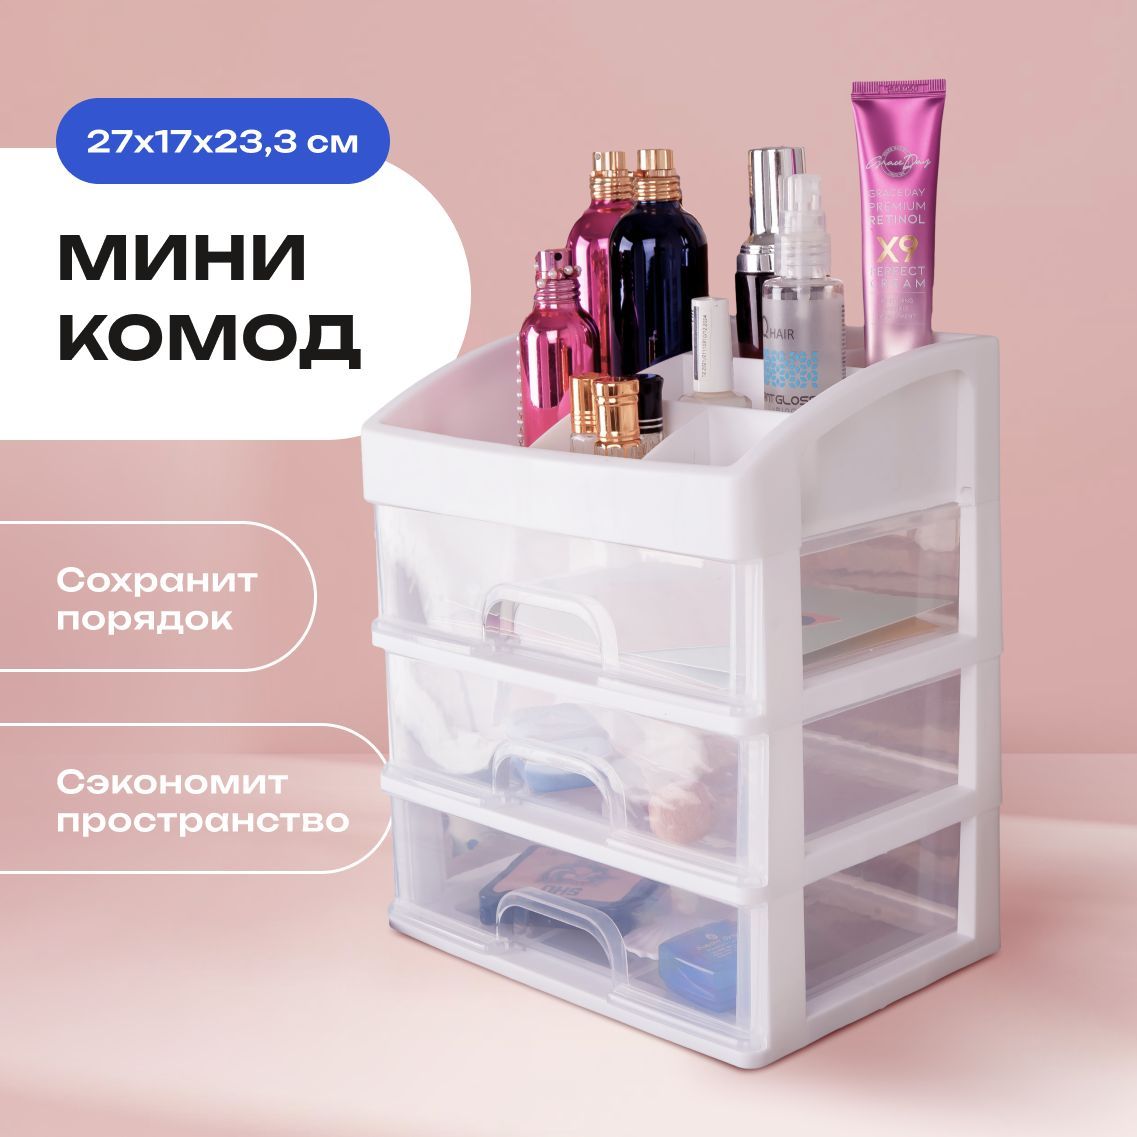 Комоды и тумбы купить в Минске для прихожей в каталоге интернет-магазина